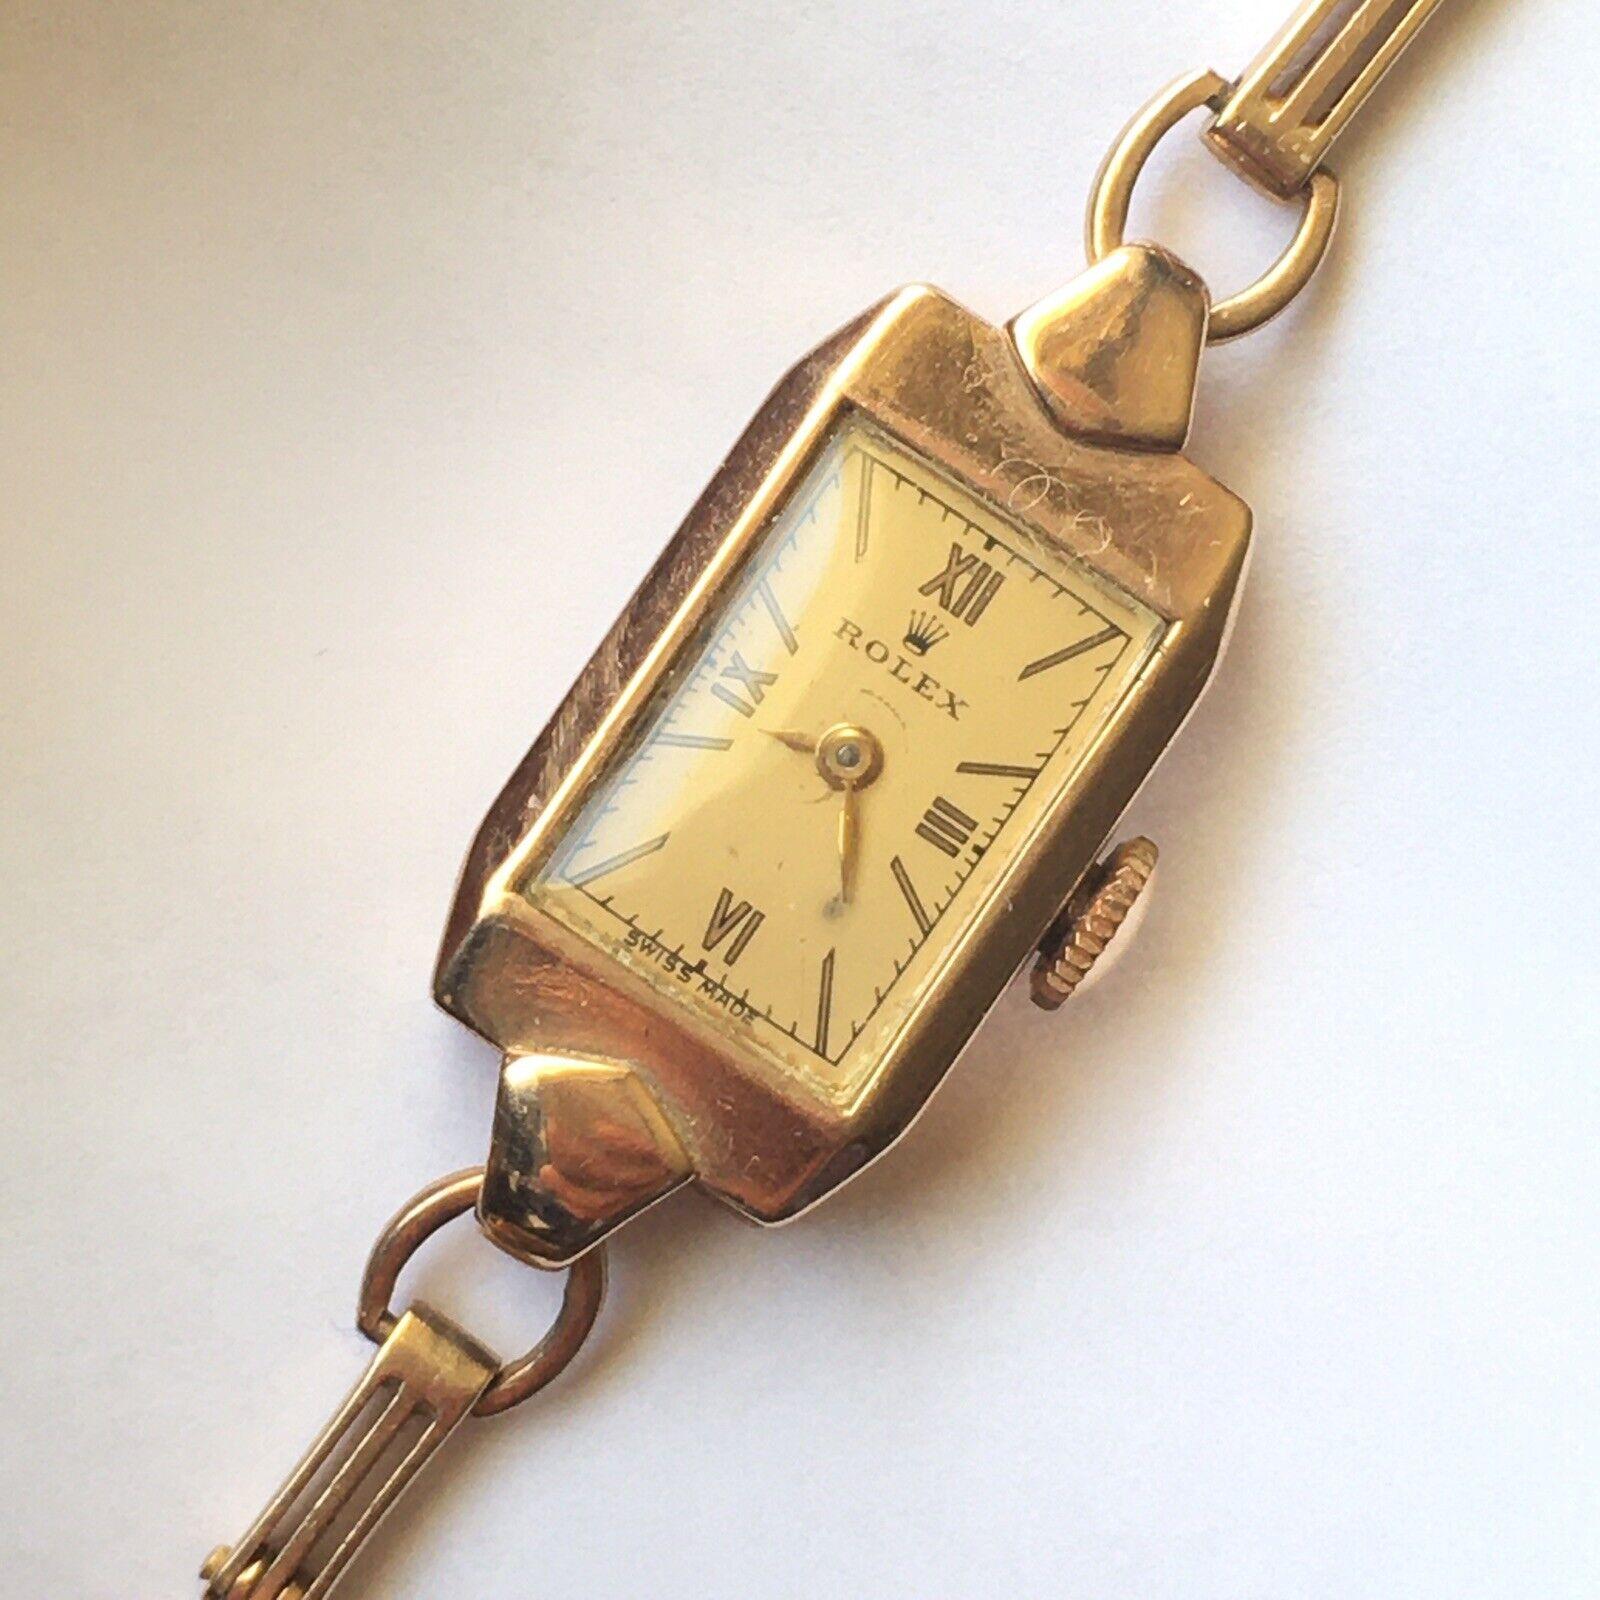 Montre mécanique Rolex en or jaune 9K pour dame, 1938 

Longueur du poignet 6,25 pouces
Marquage  